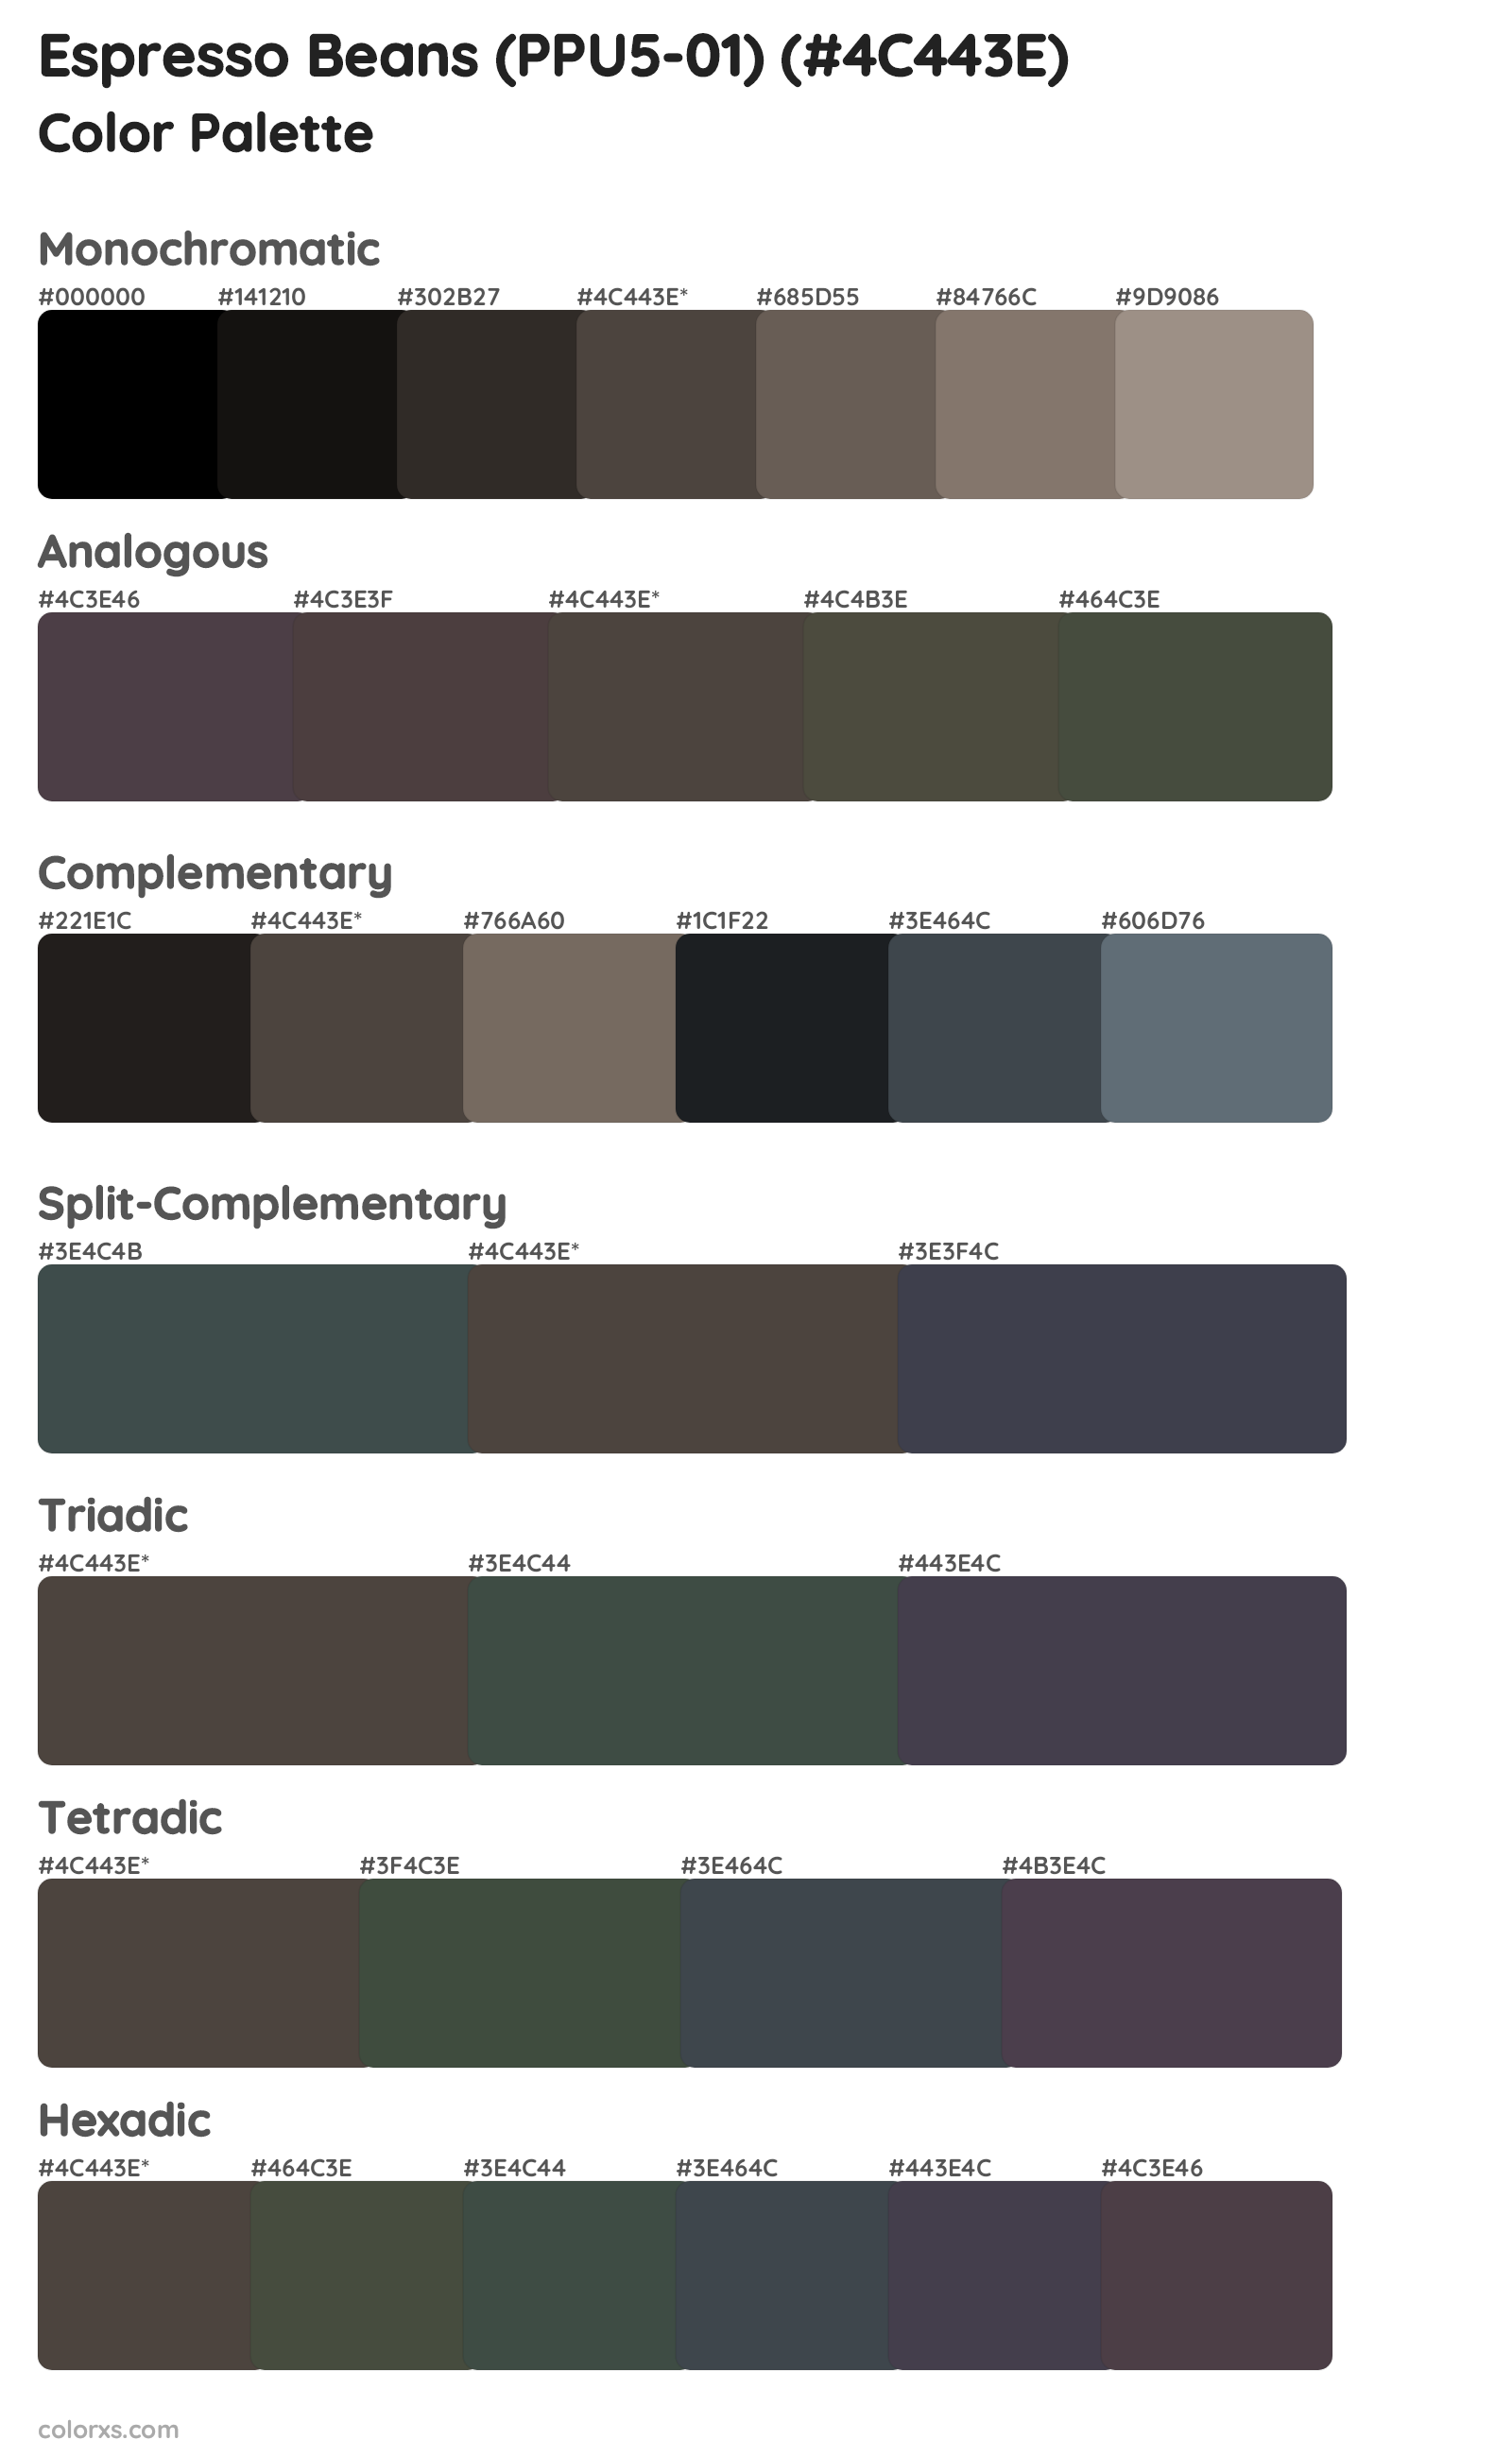 Espresso Beans (PPU5-01) Color Scheme Palettes